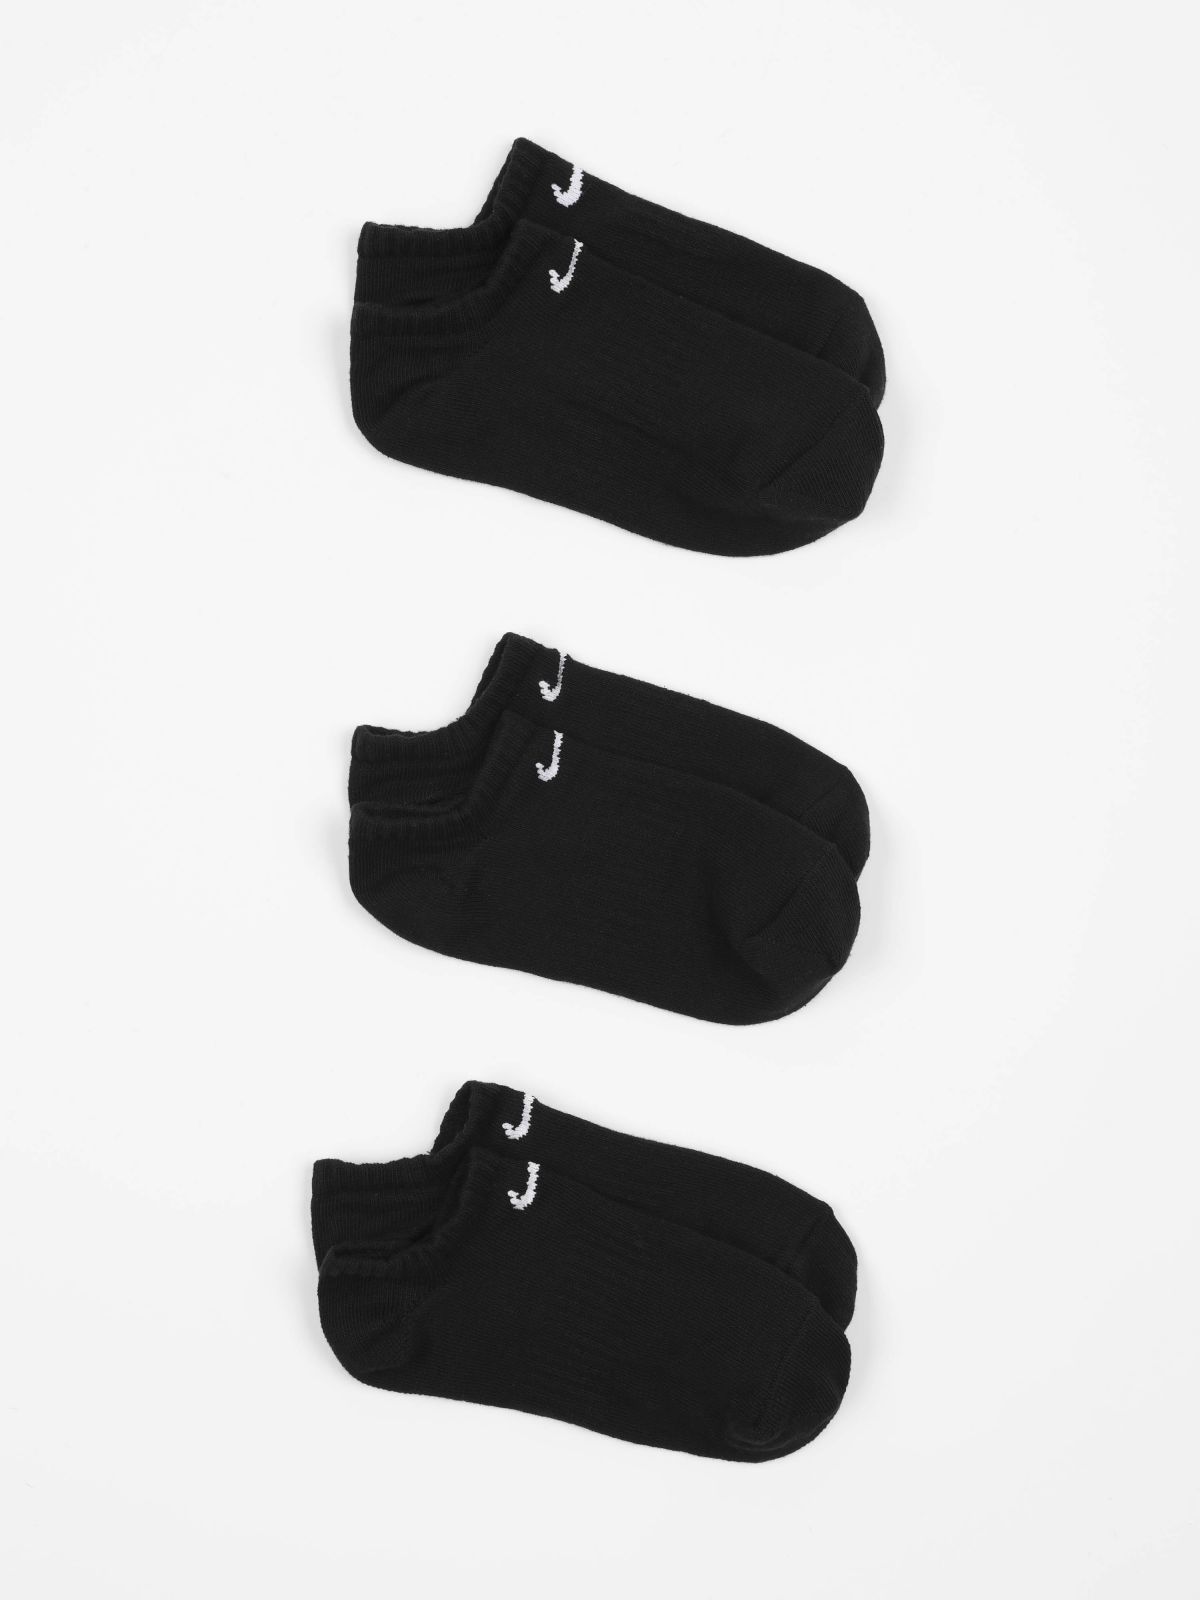  מארז 3 זוגות גרביים נמוכים עם לוגו / נשים של NIKE